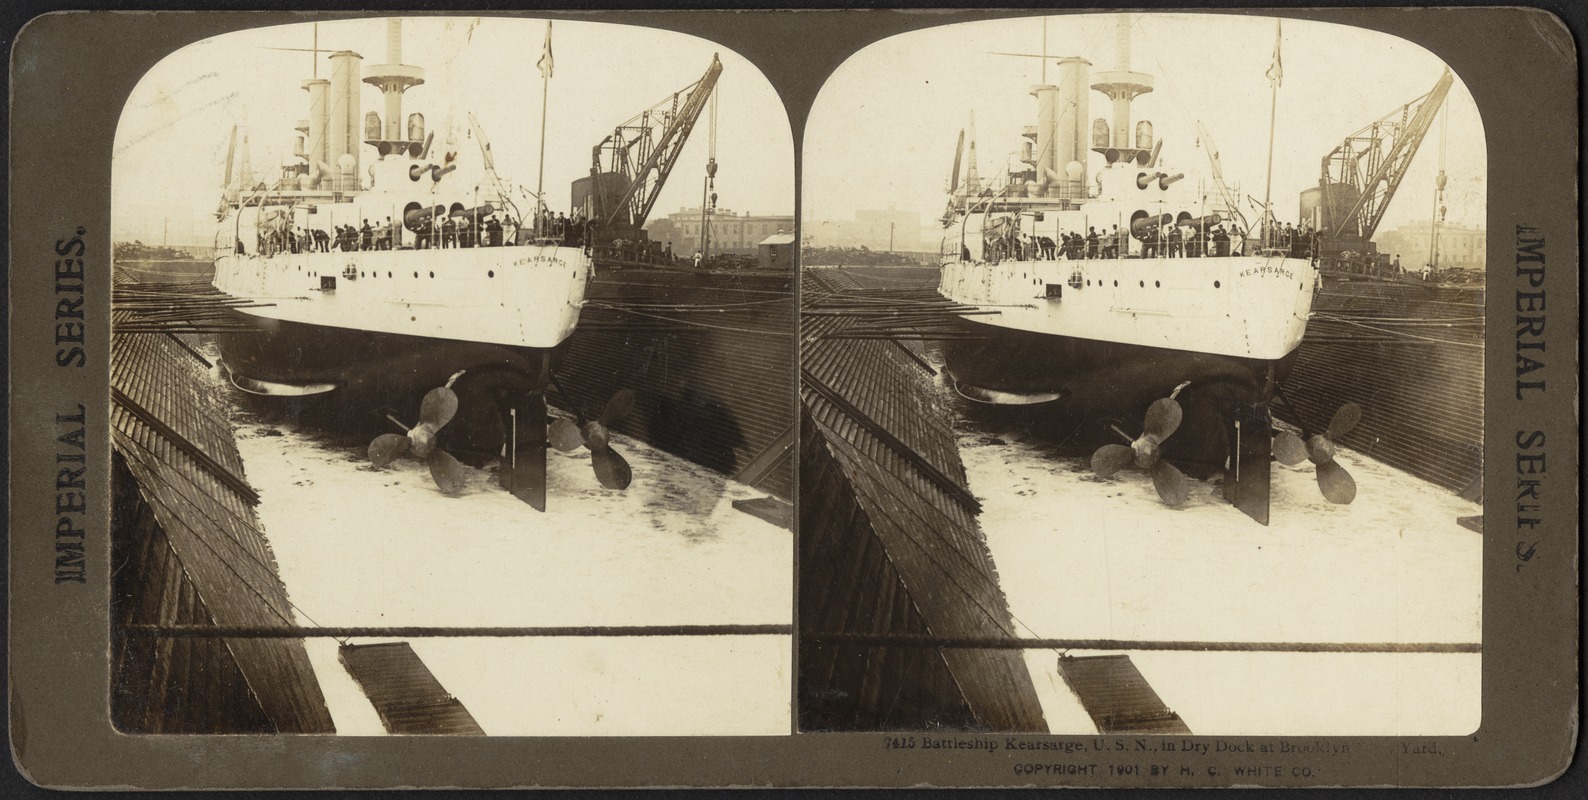 Battleship Kearsarge, U.S.N., in dry dock at Brooklyn Navy Yard